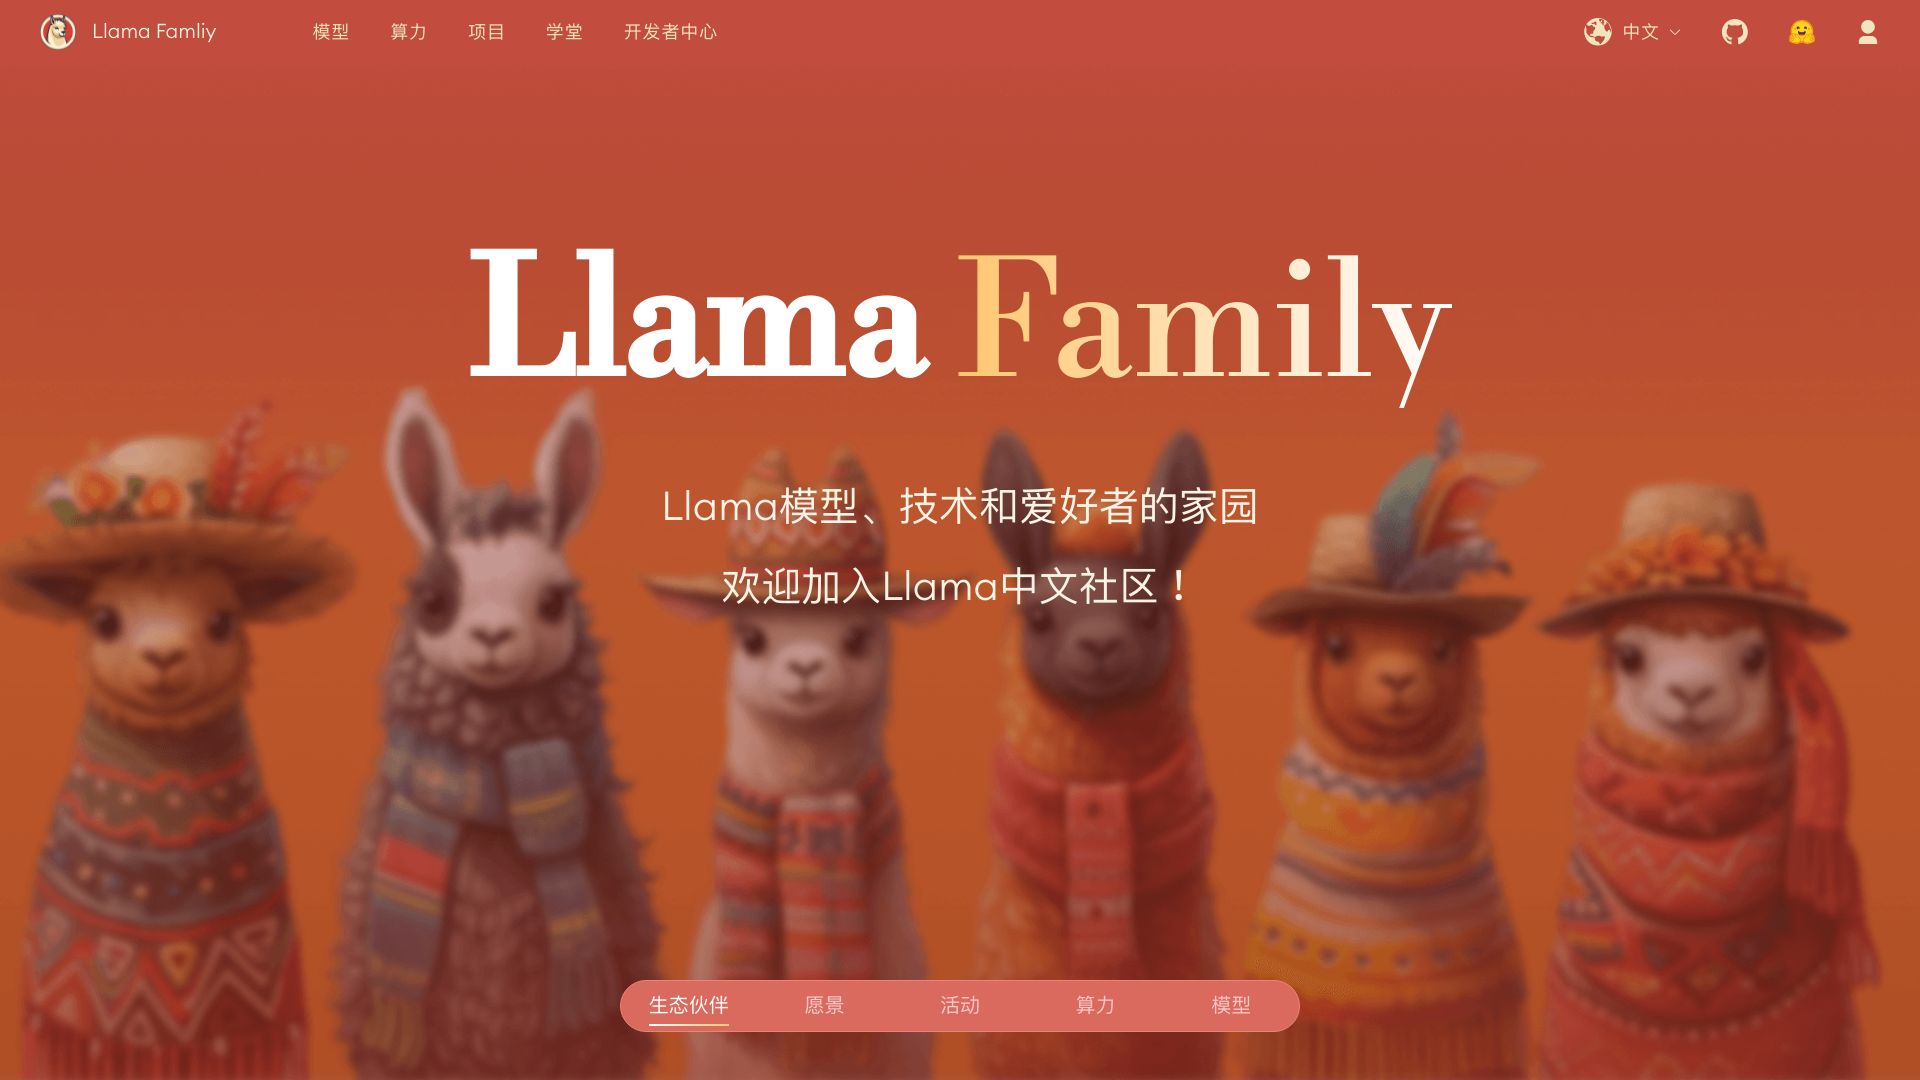 लामा चीनी समुदाय